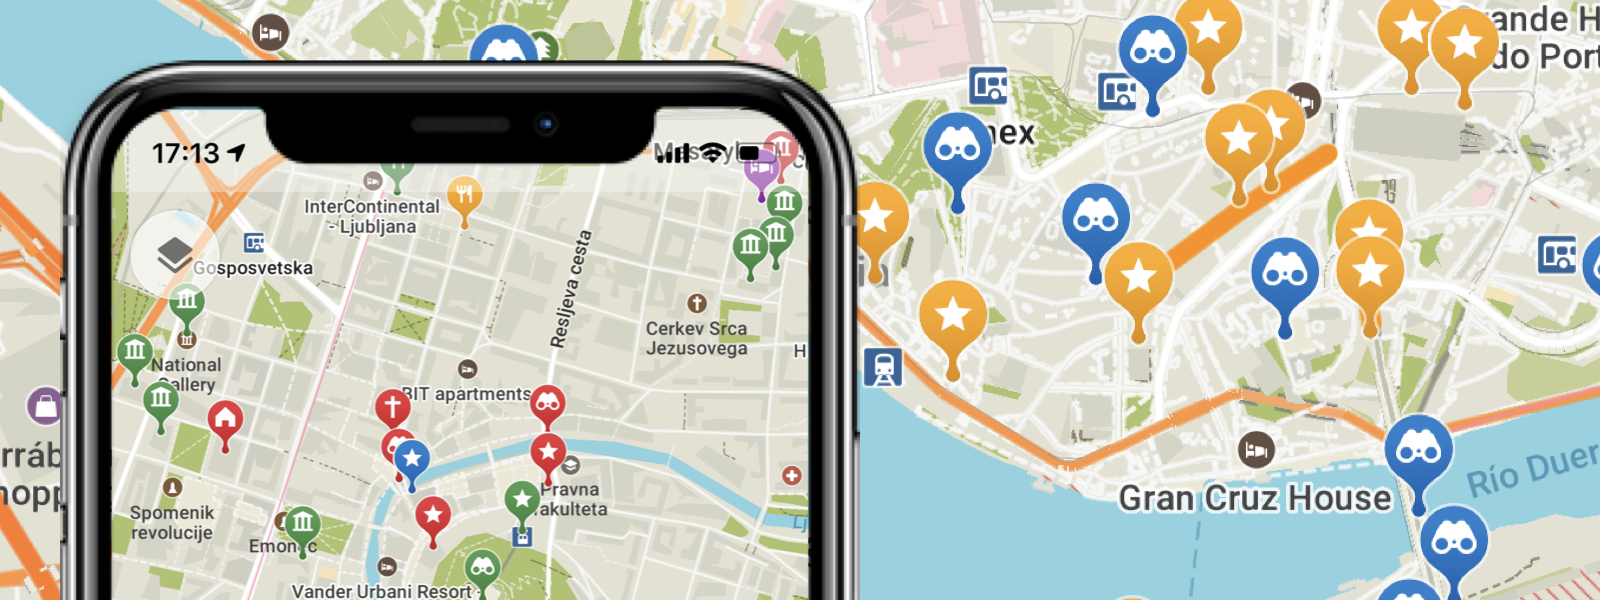 بديل قوقل ماب تطبيق ملاحة يعمل بدون انترنت و مجاني Maps.Me